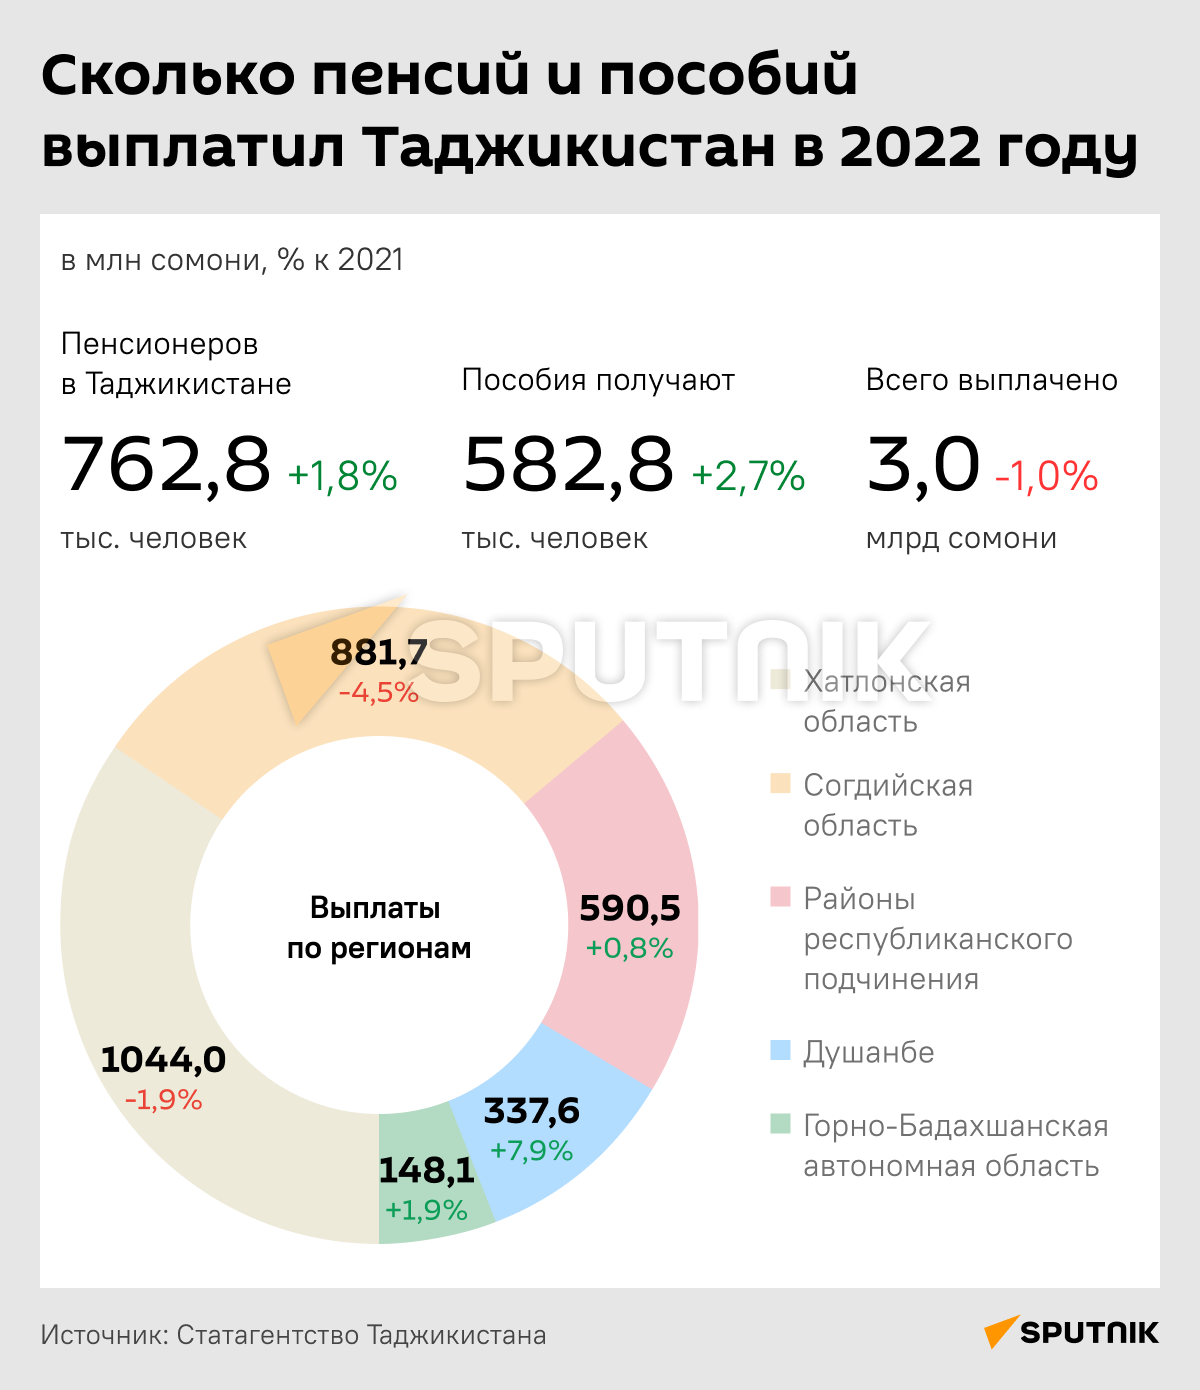 Сколько пенсий и пособий выплатил Таджикистан в 2022 году - Sputnik Таджикистан